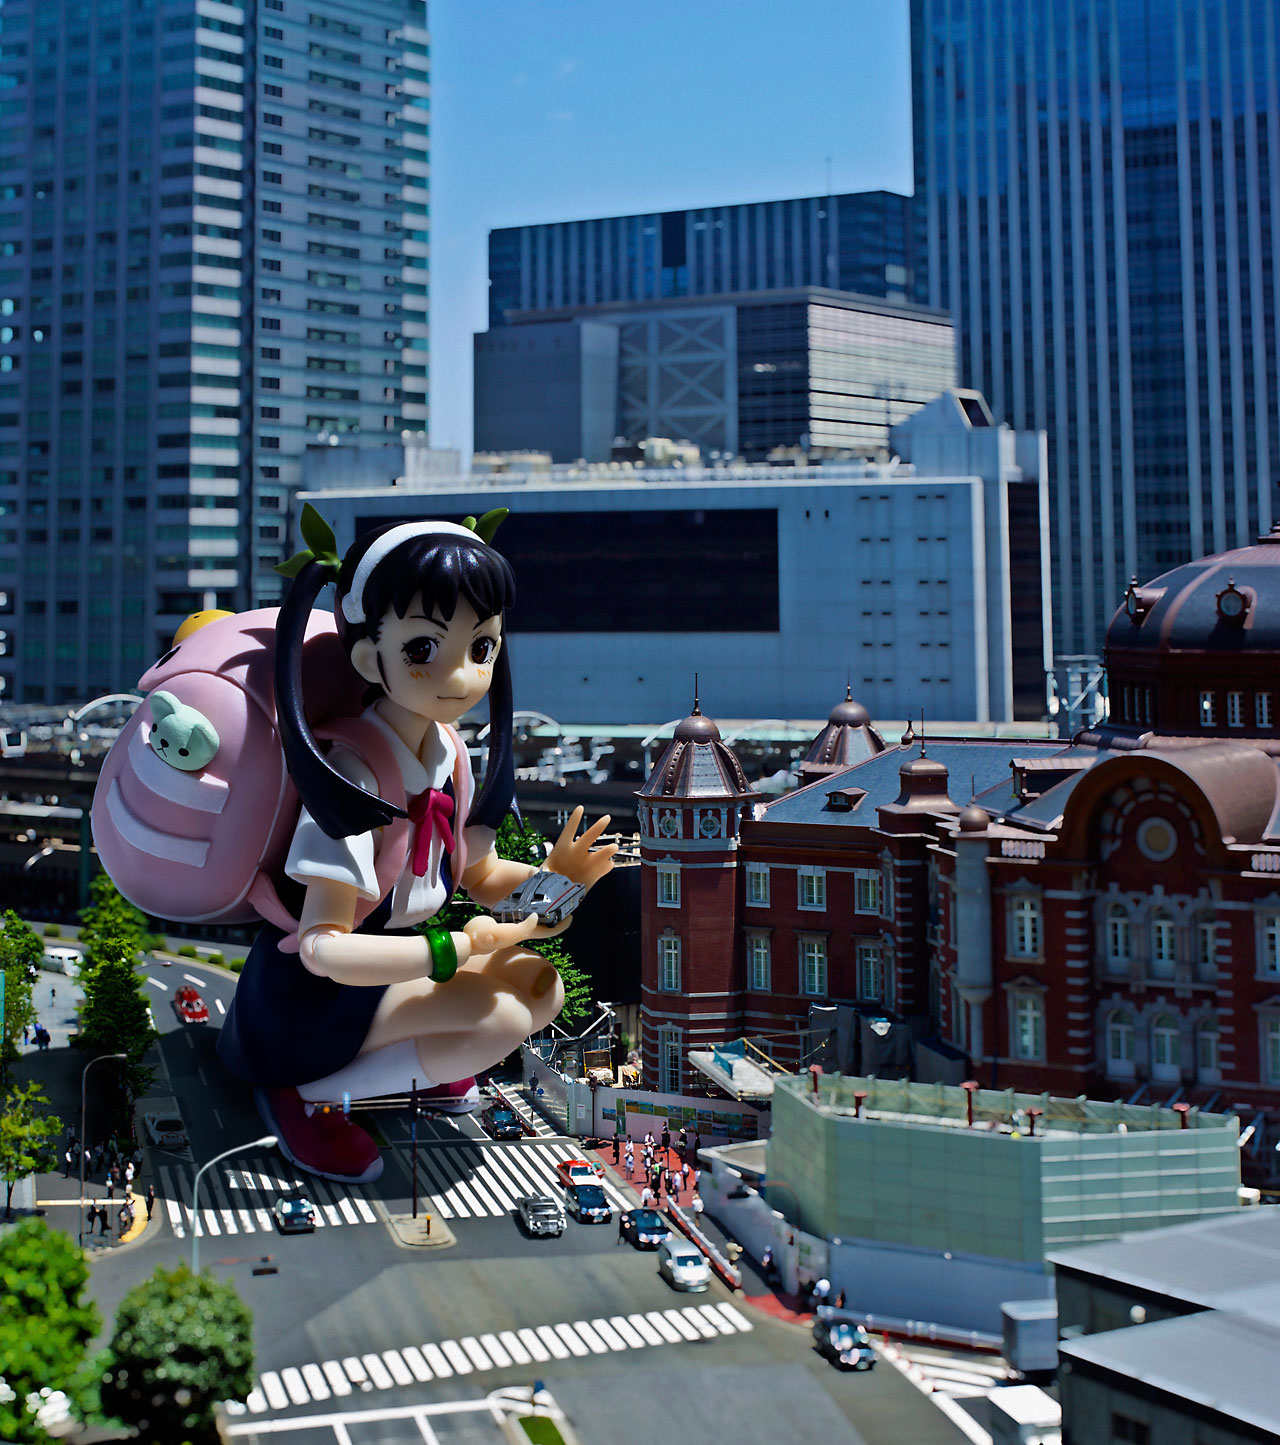 Les figurines otaku nous envahisse!! ils courrent partout dans les villes du japon! Original